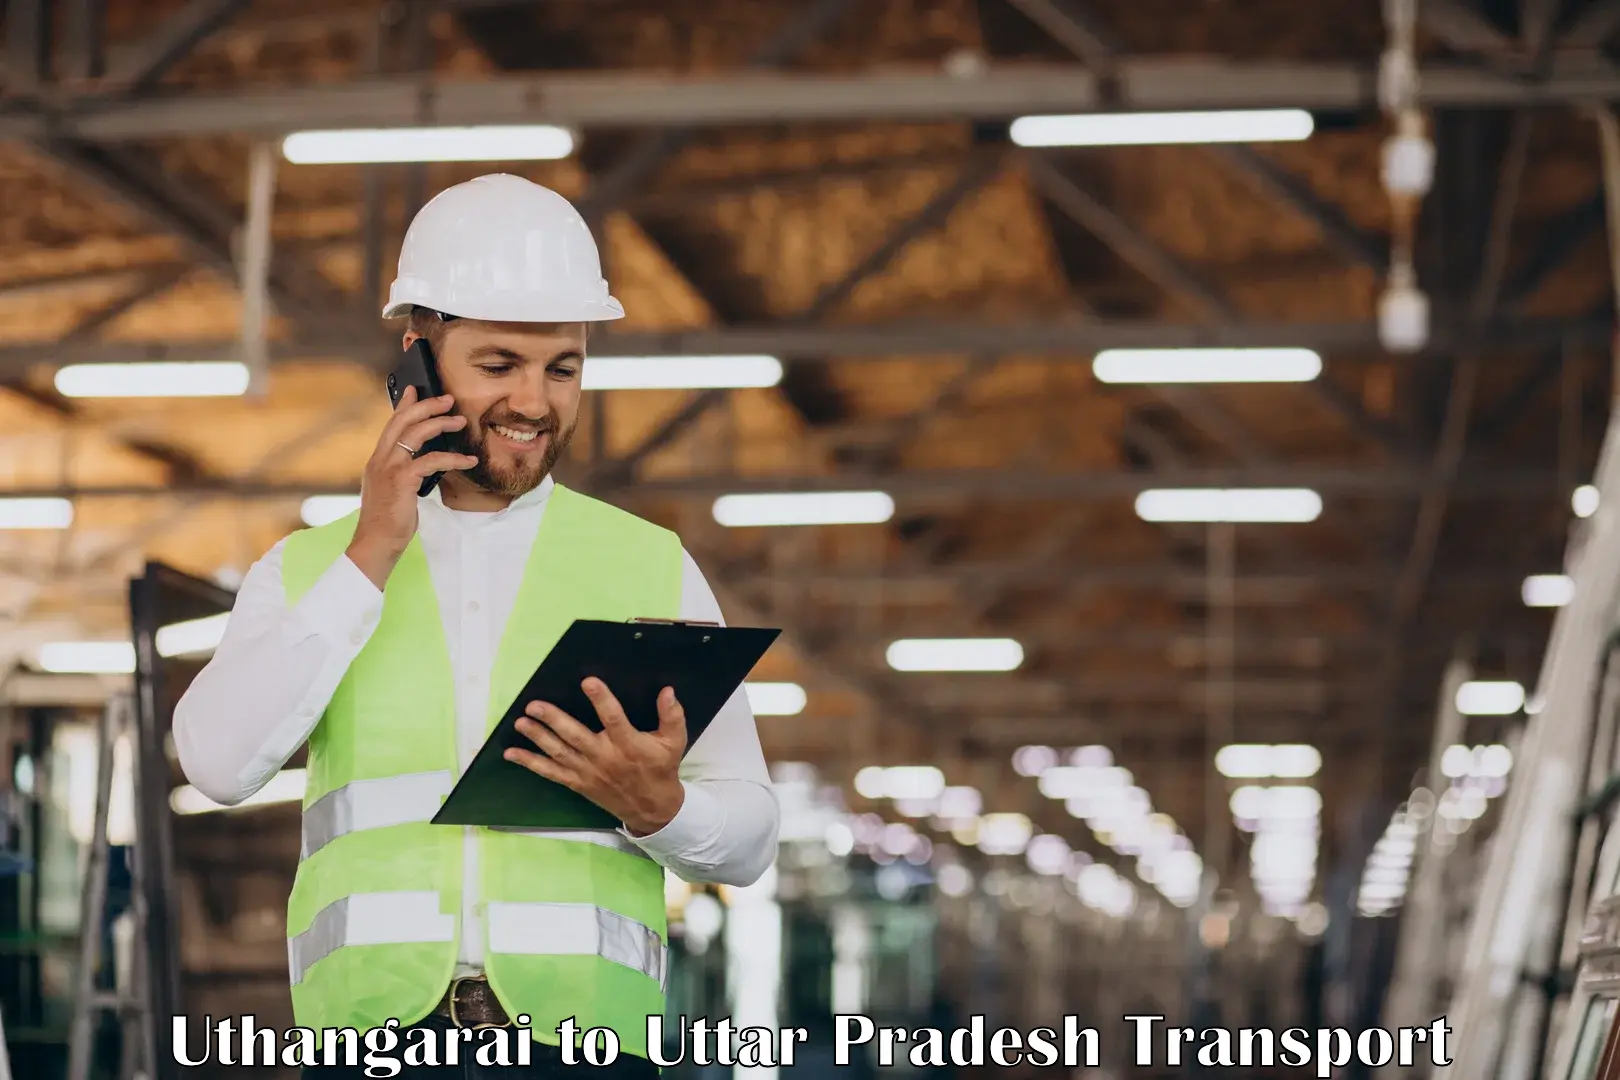 International cargo transportation services Uthangarai to Nizamabad Azamgarh